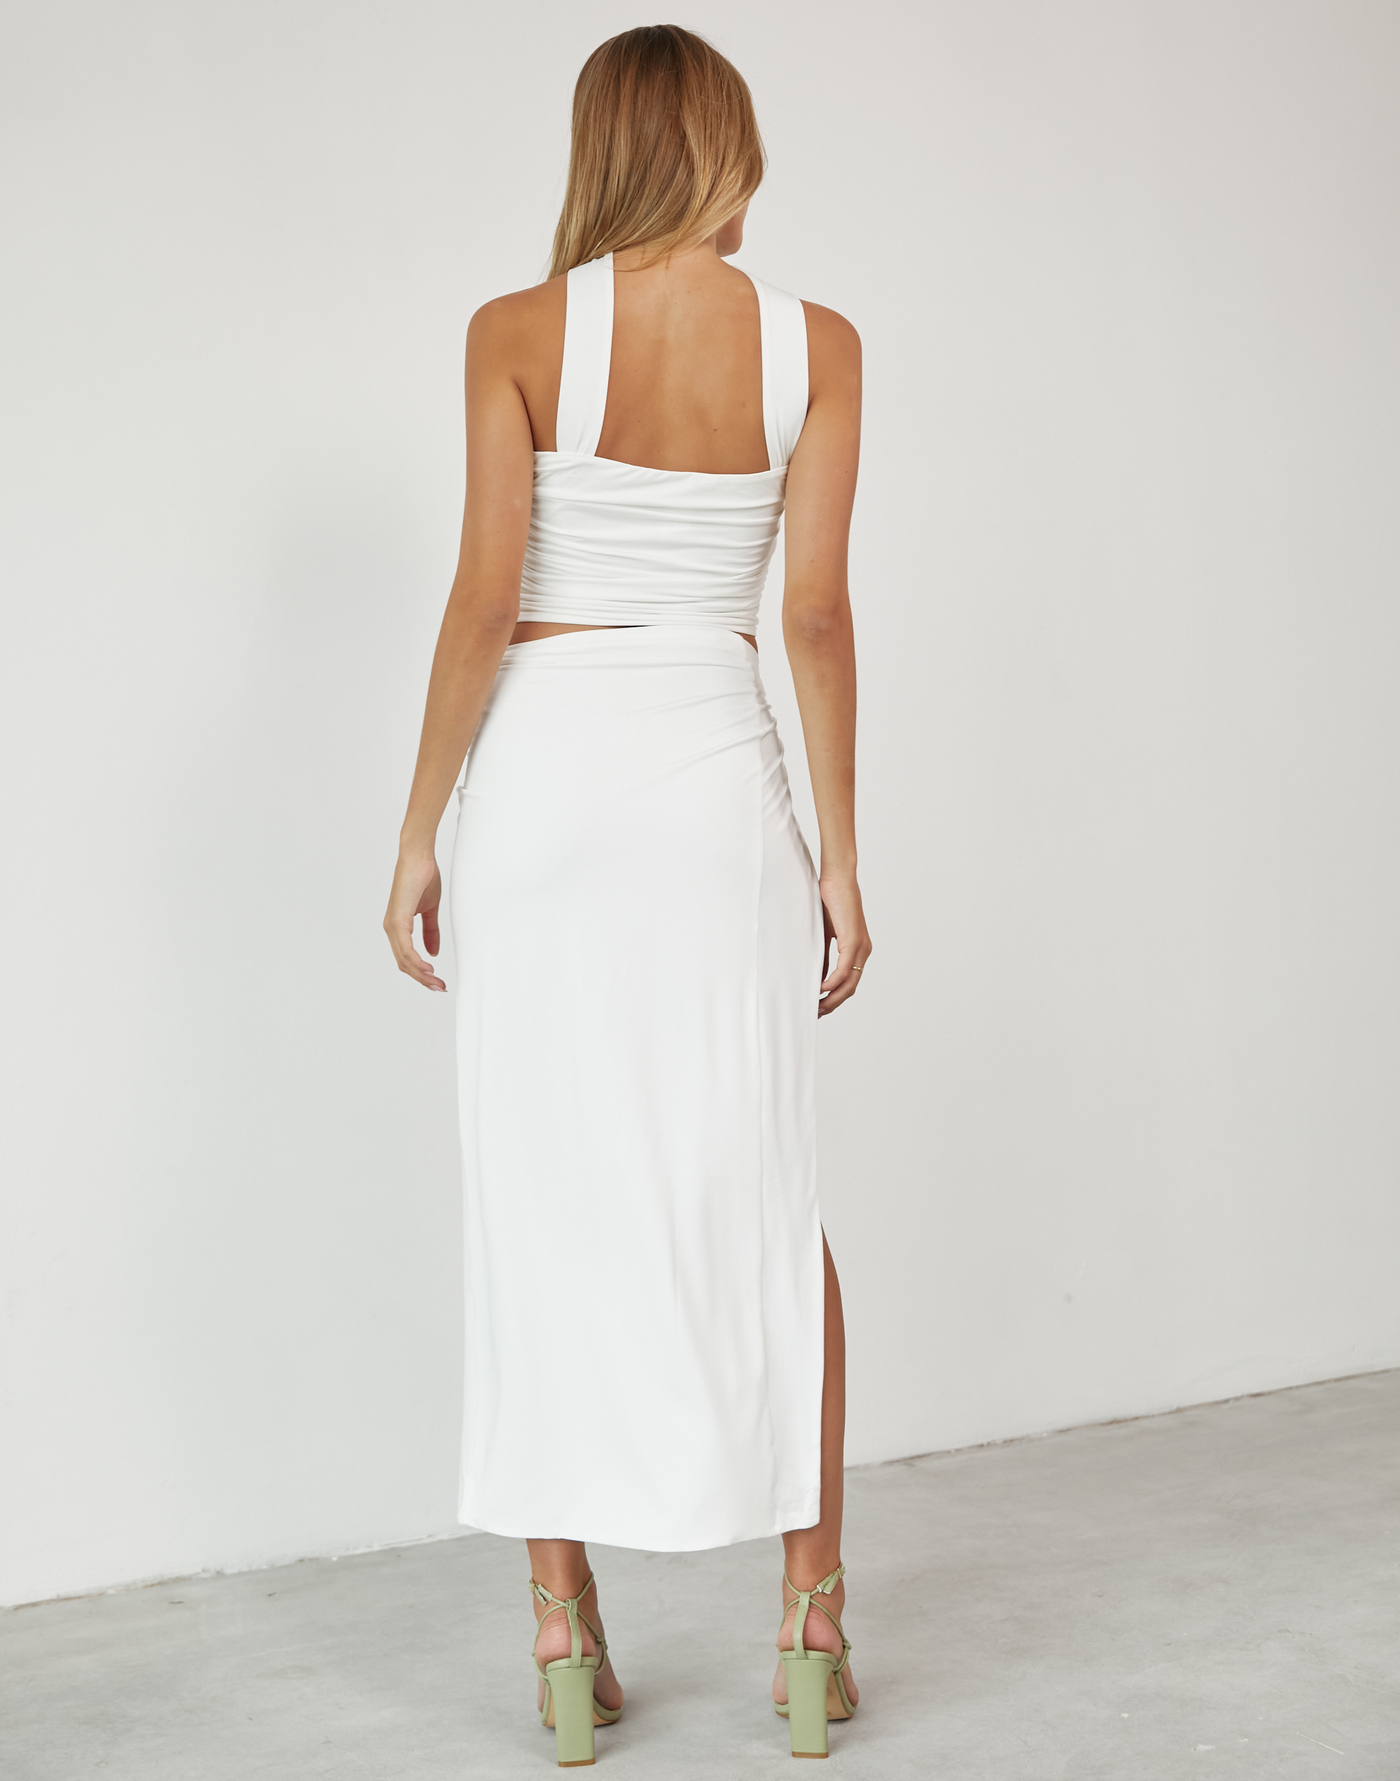 Chloe Maxi Skirt (White) - Side Knot Maxi Skirt - Women's Skirt - Charcoal Clothing